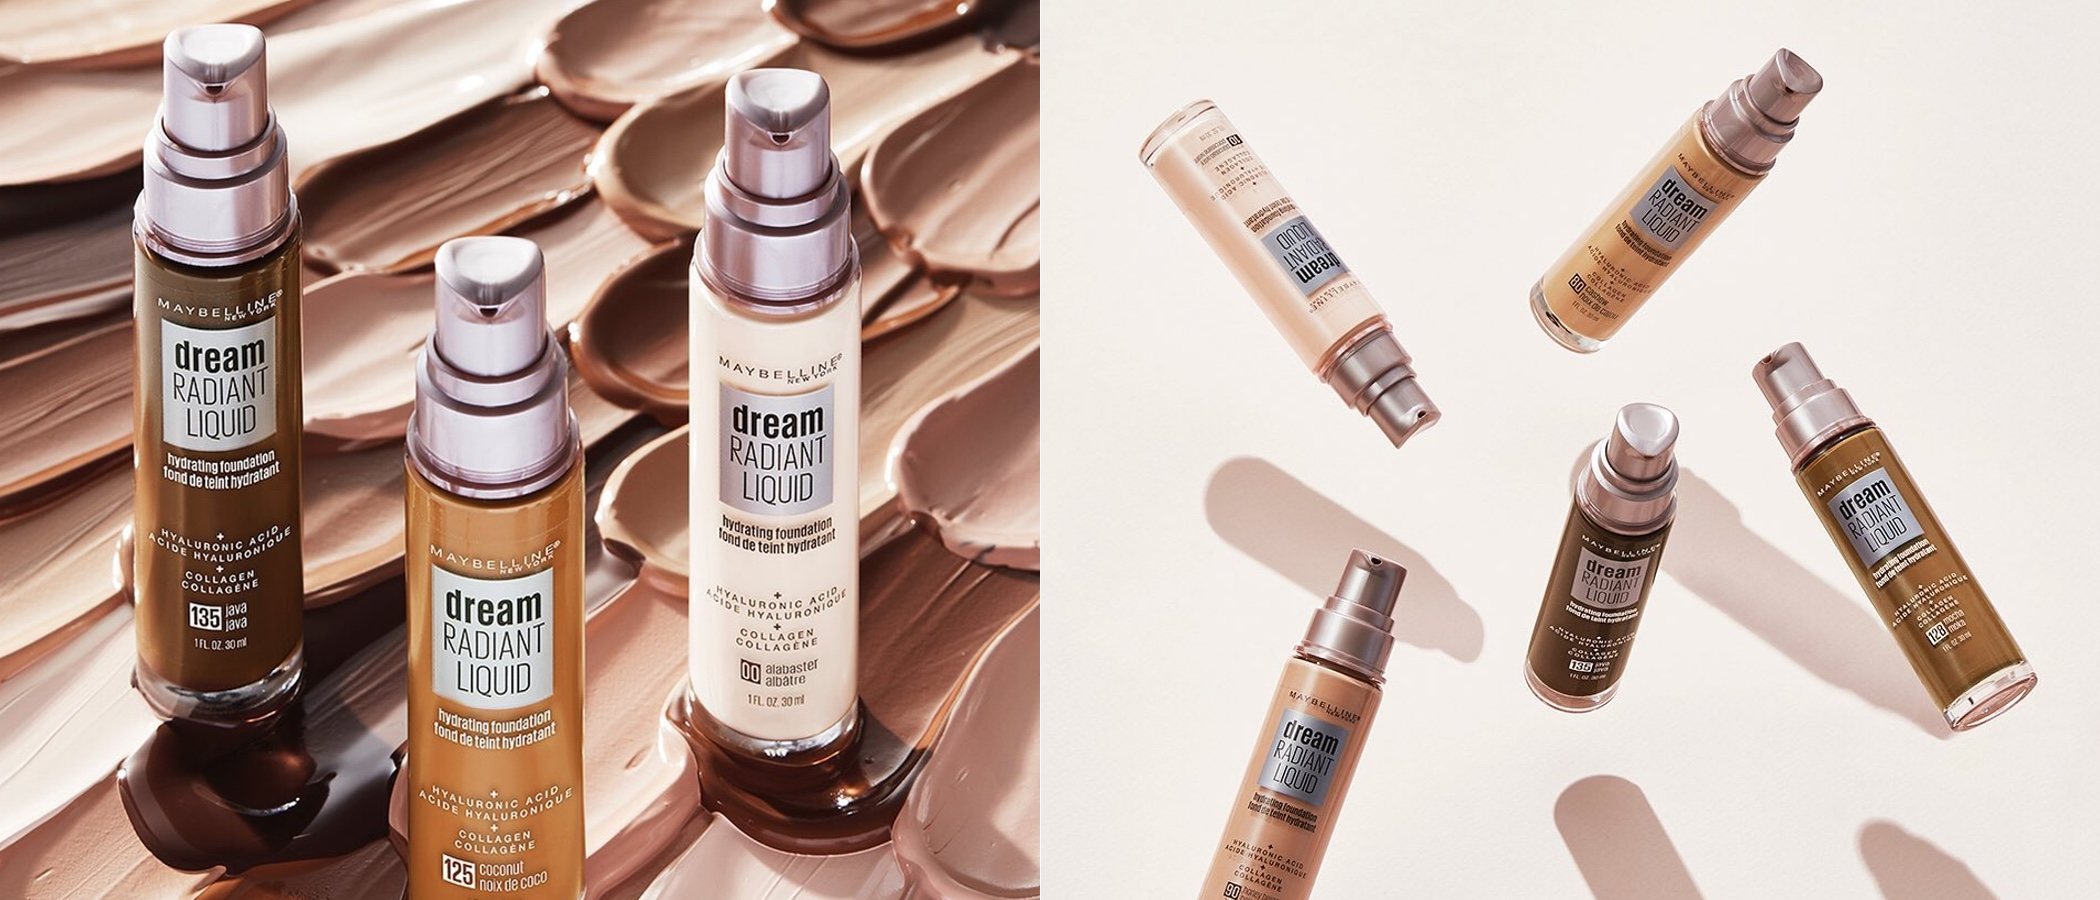 La 'Dream Radiant Liquid' de Maybelline, la base de maquillaje que protege las pieles secas